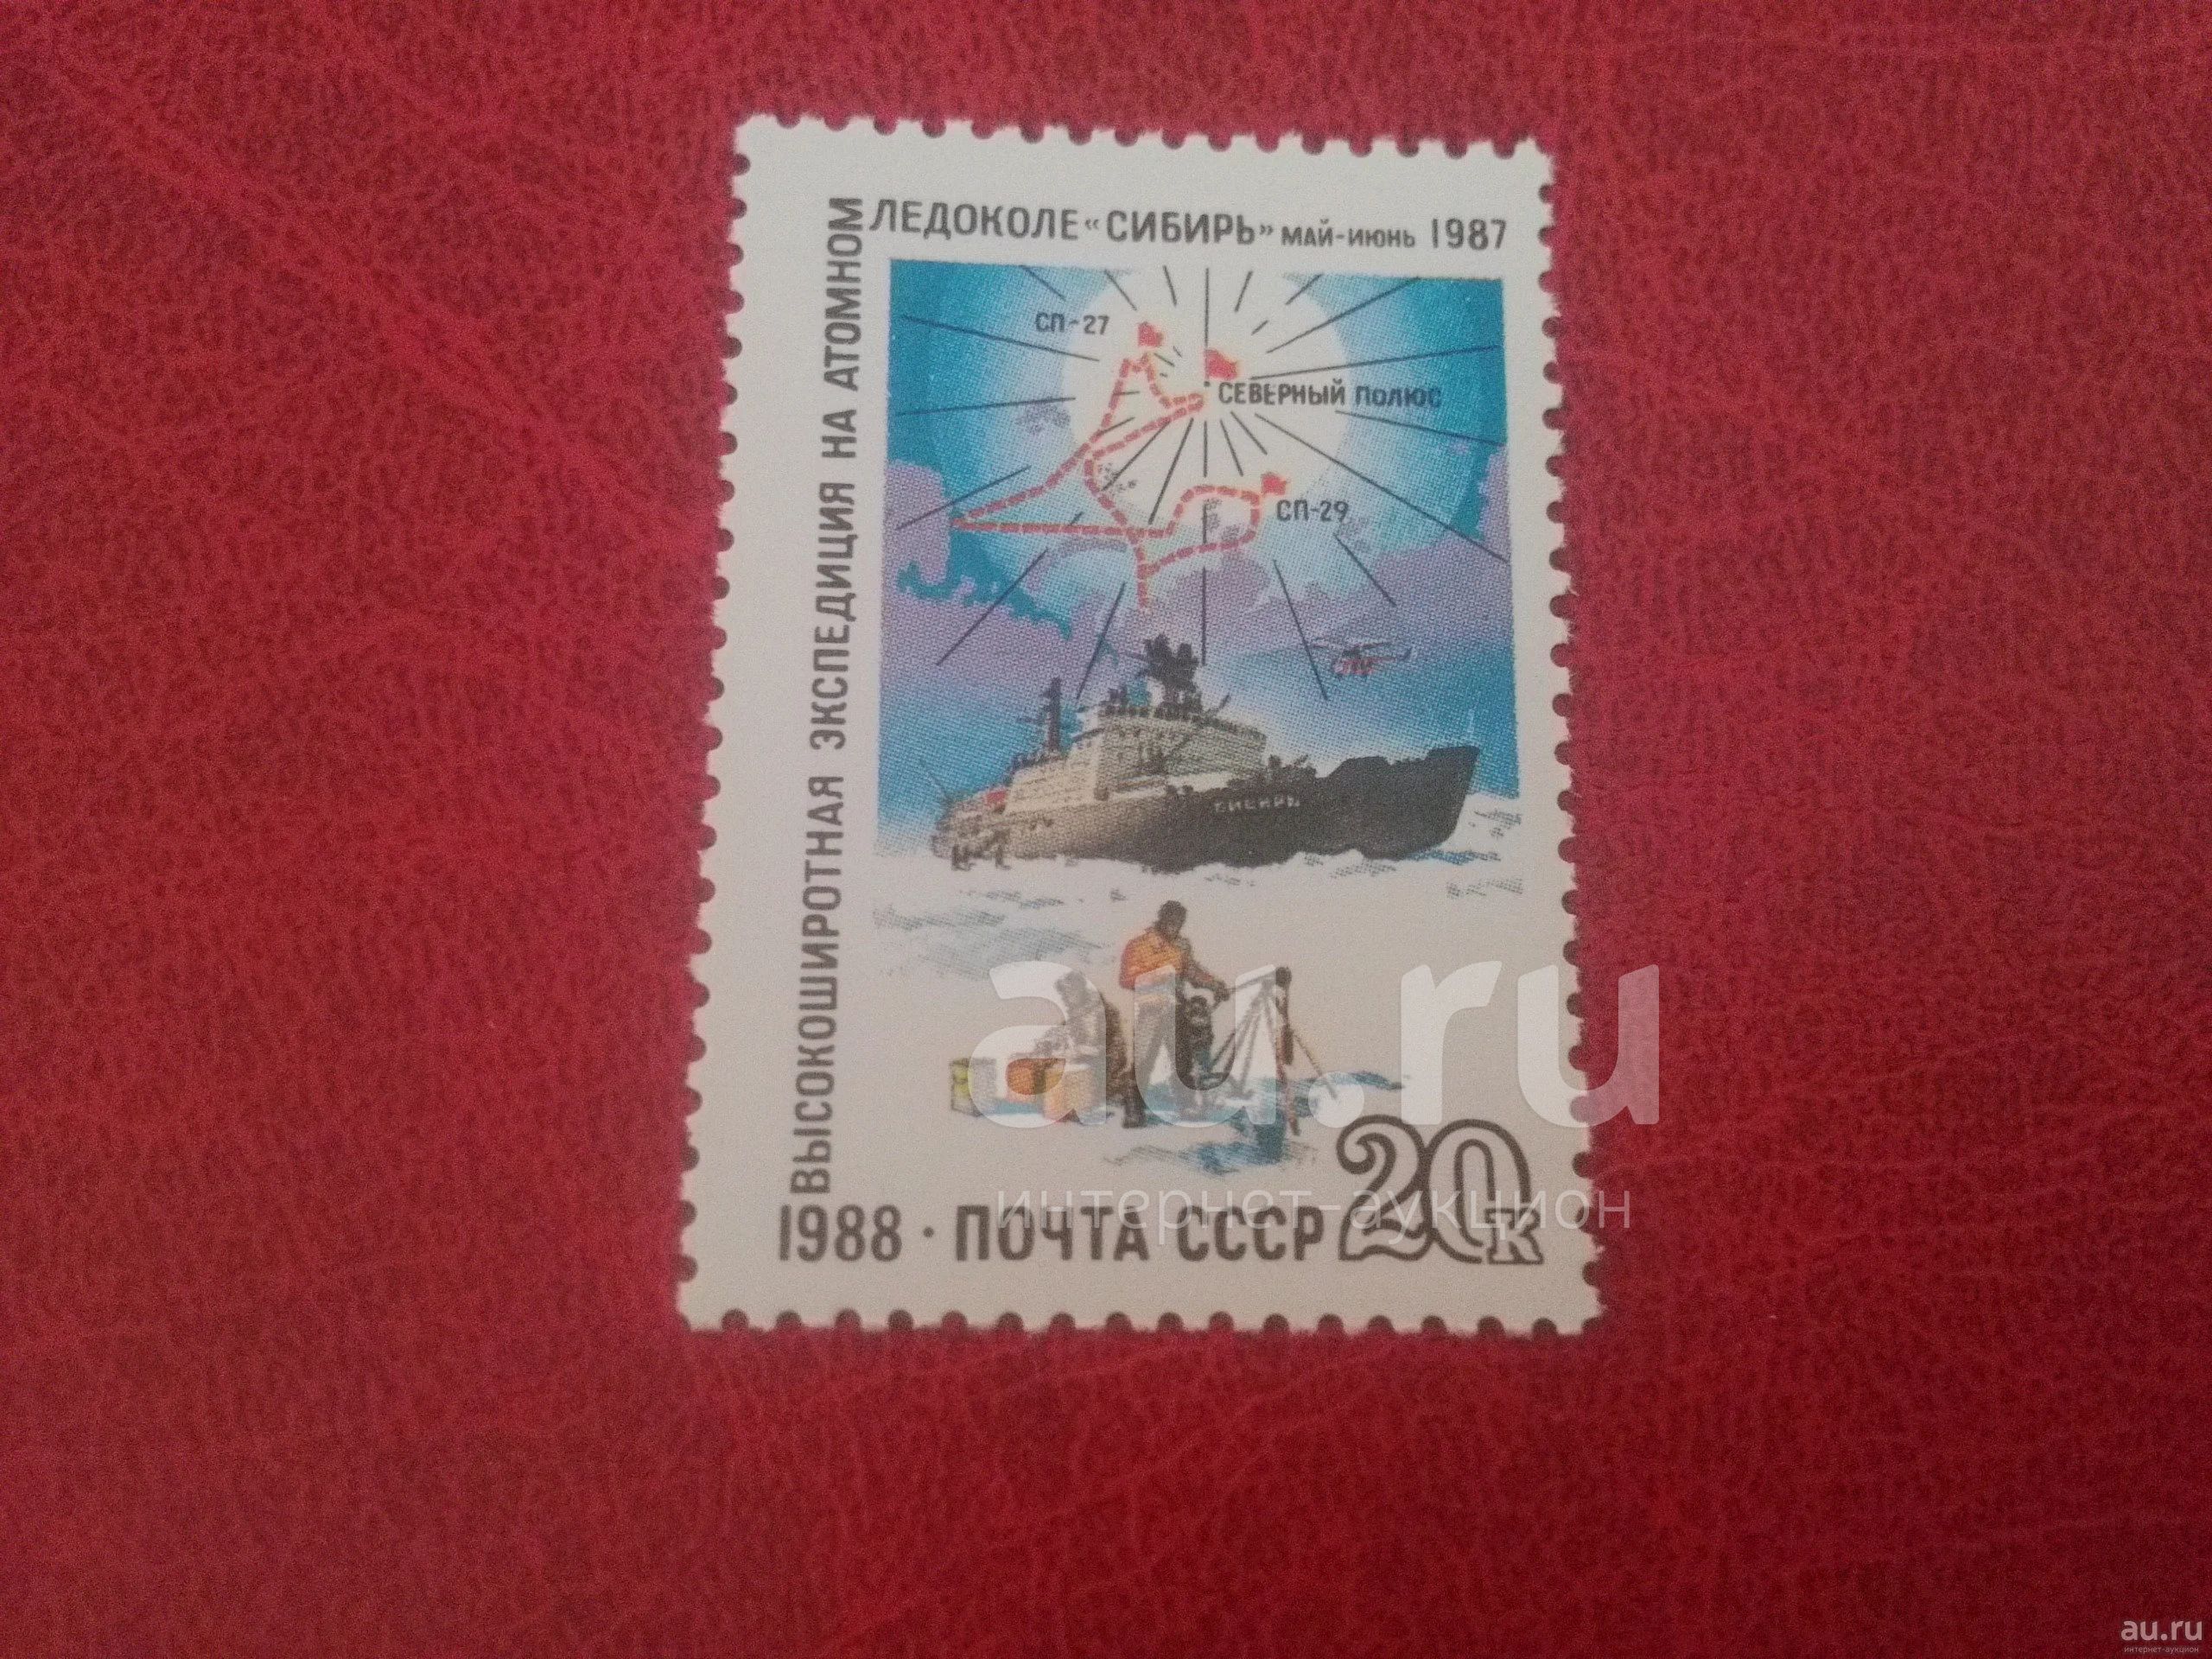 Значок ледокол Сибирь 1978-1988 10 лет. Почтовые марки с ядерным взрывом. Значок ледокол Сибирь 1978-1988.